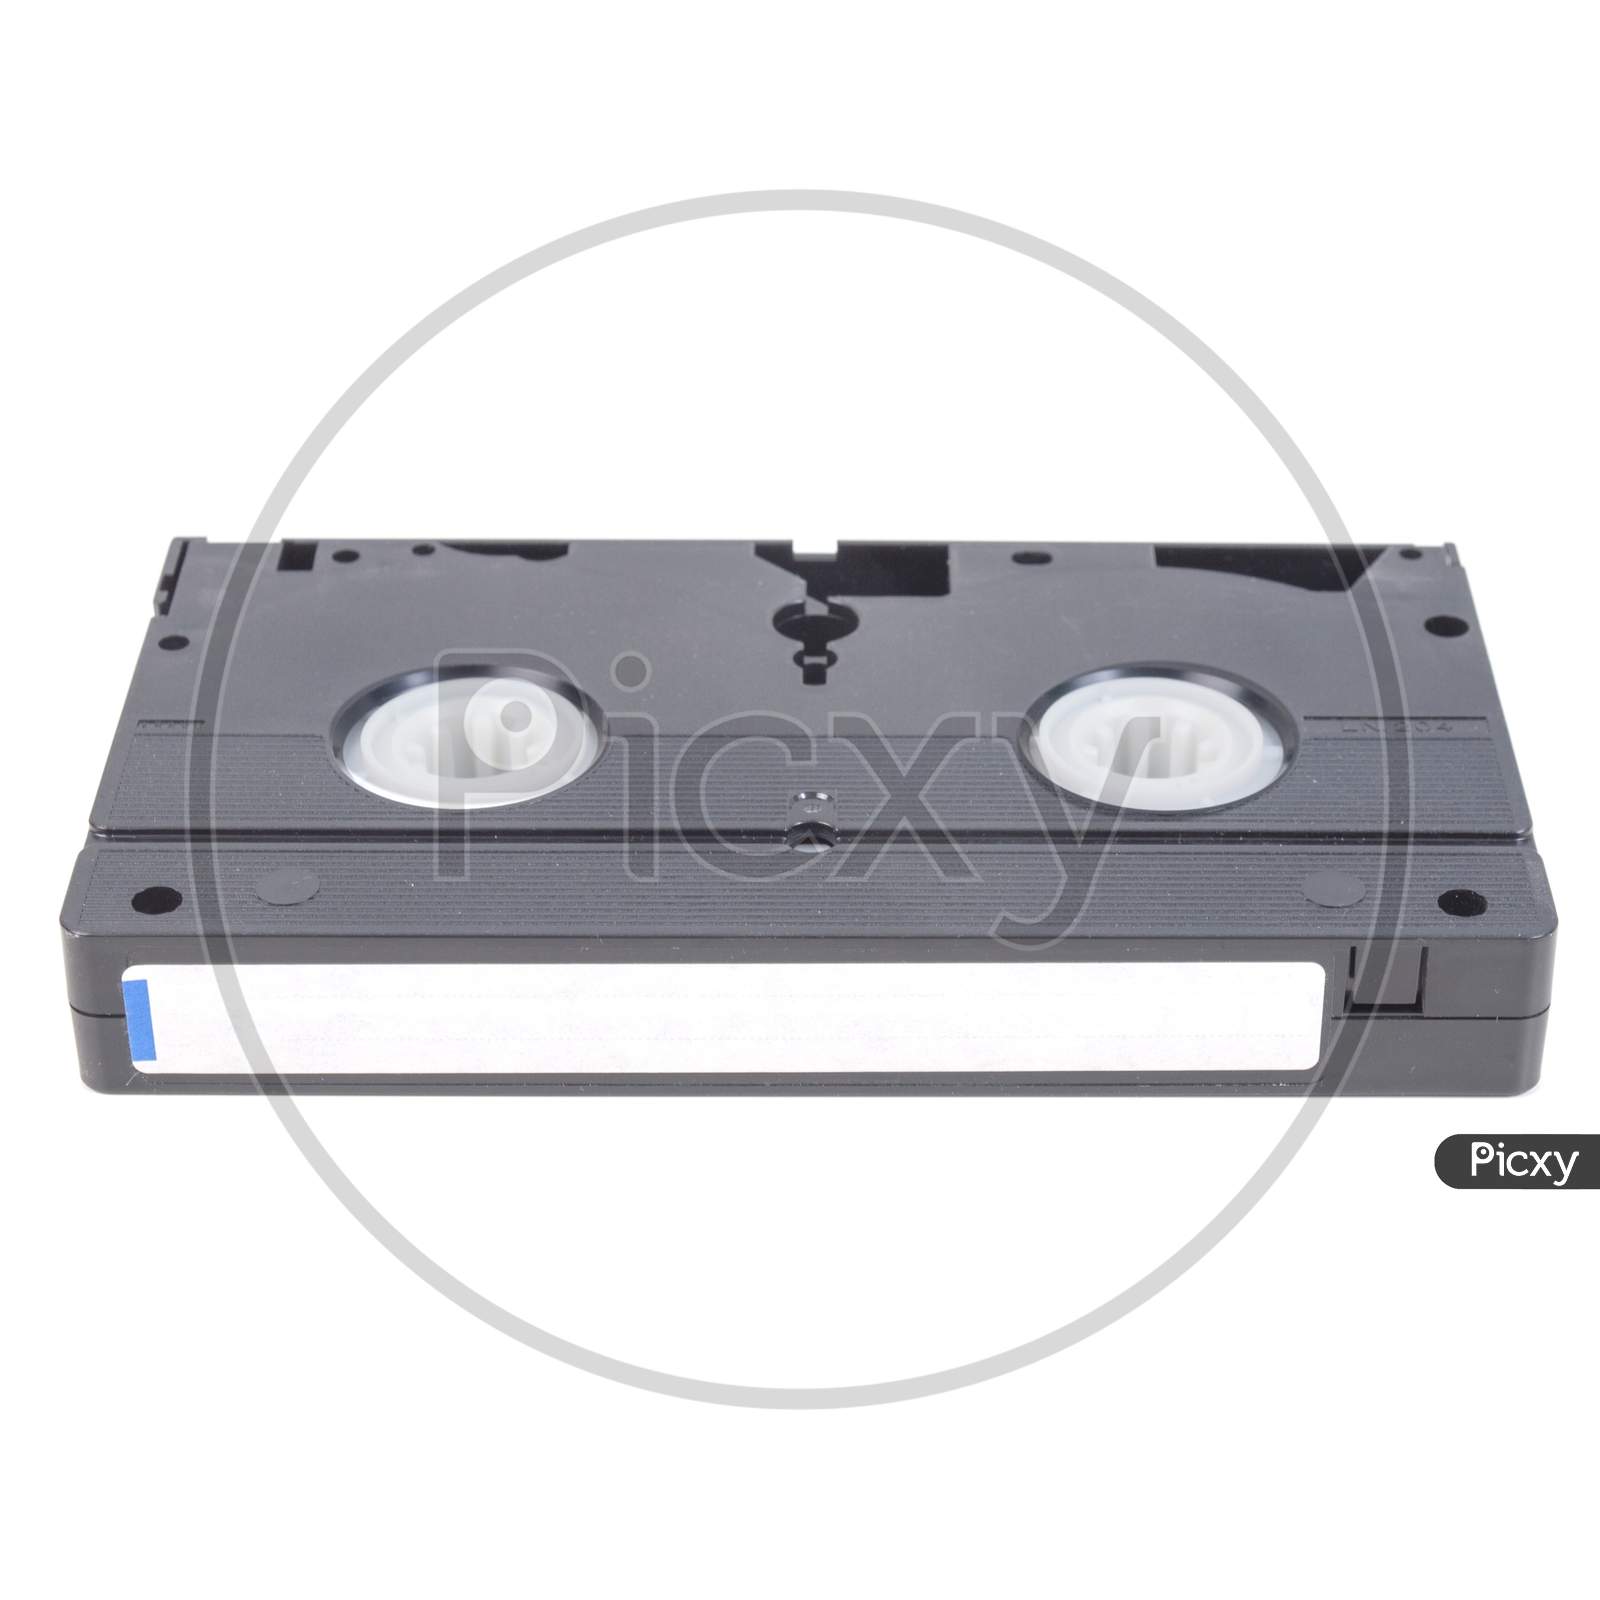 Vhs Tape Cassette